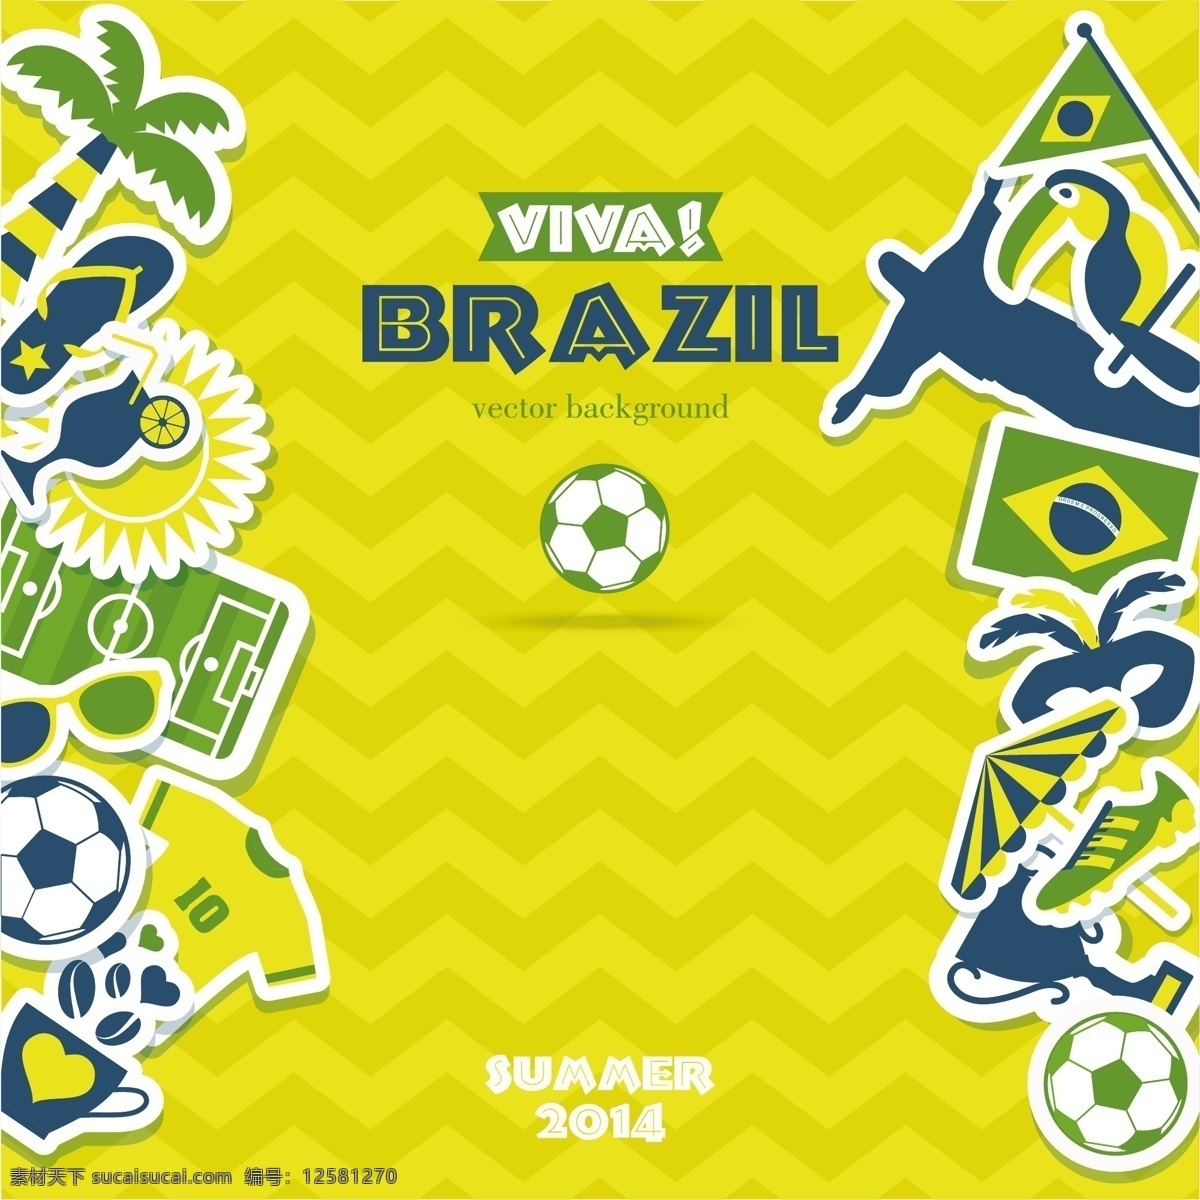 卡通 世界杯 海报 模板下载 足球 条纹 体育运动 生活百科 矢量素材 黄色